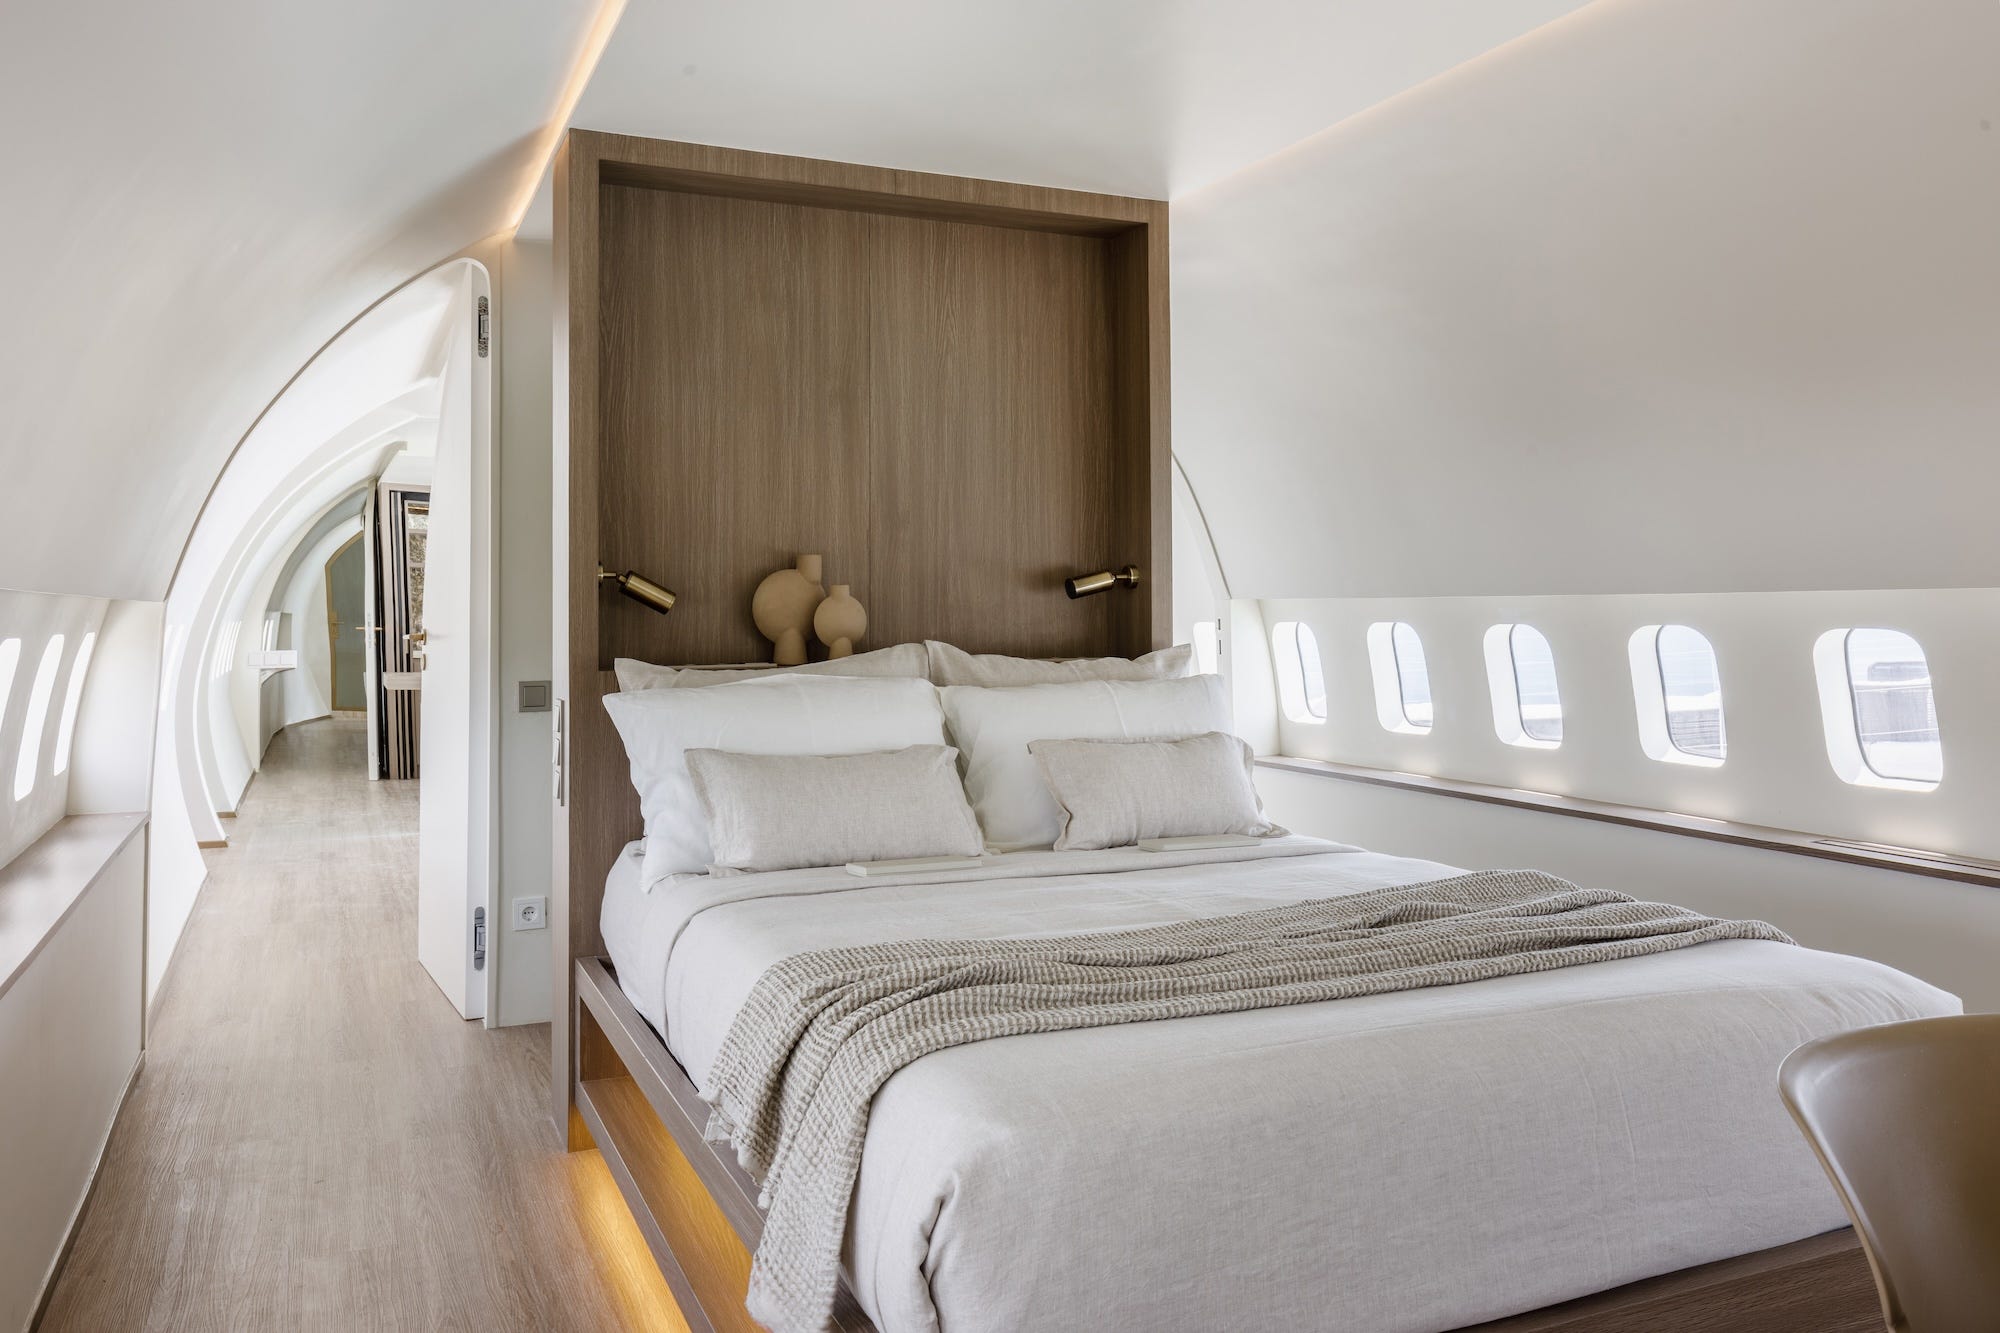 De slaapkamer in het vliegtuig. Het bed heeft een ingebouwd, houten hoofdeinde.